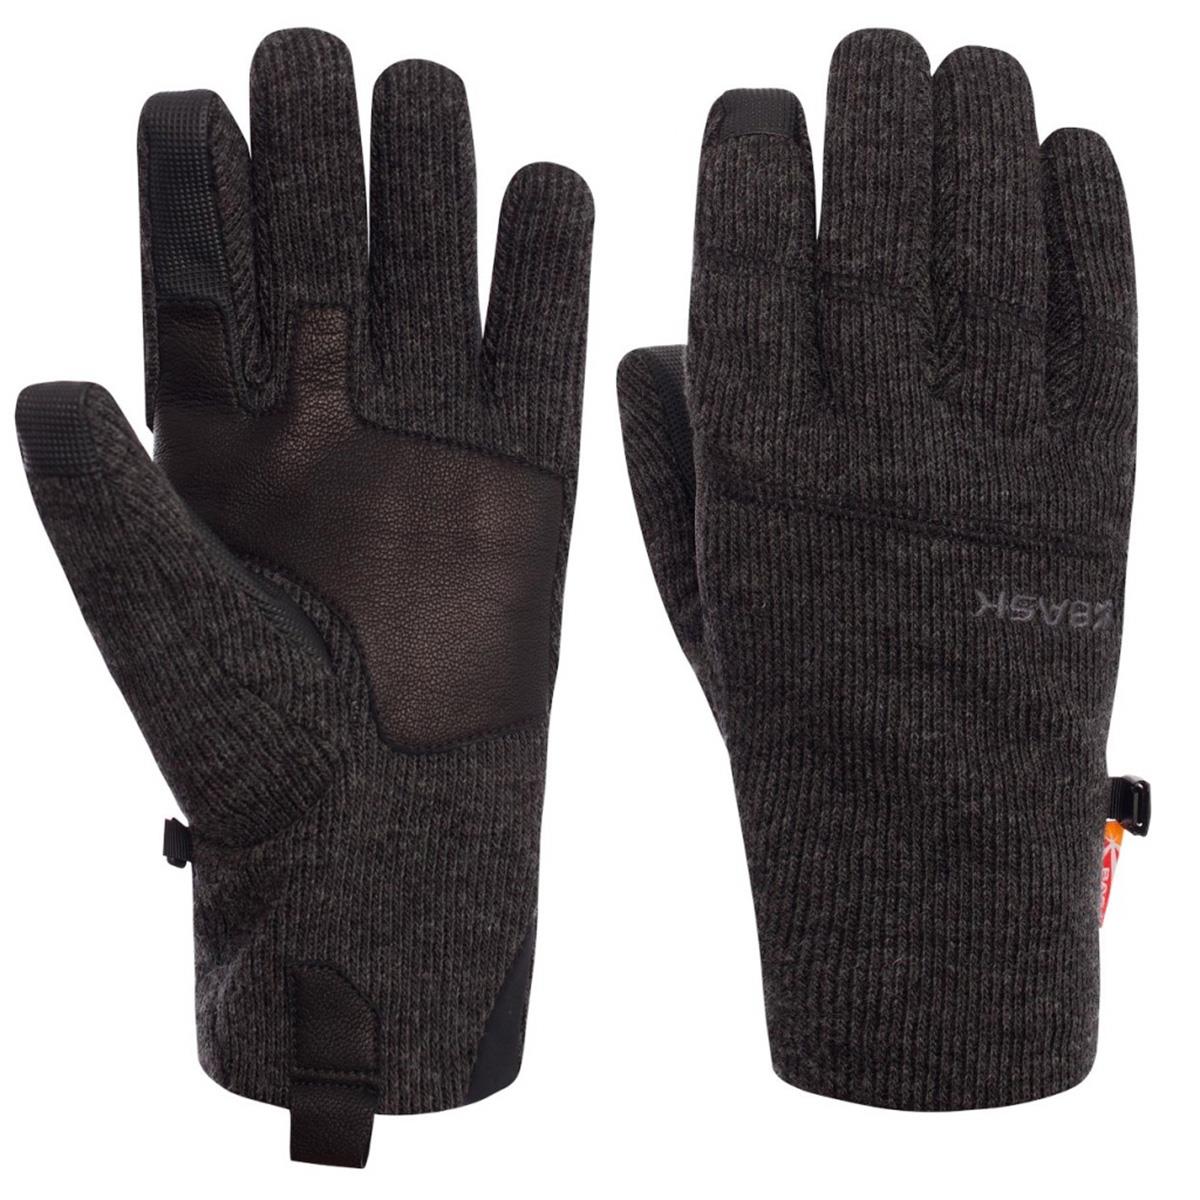 Перчатки M-TOUCH GLOVE (1204) БАСК текстильные перчатки tegera